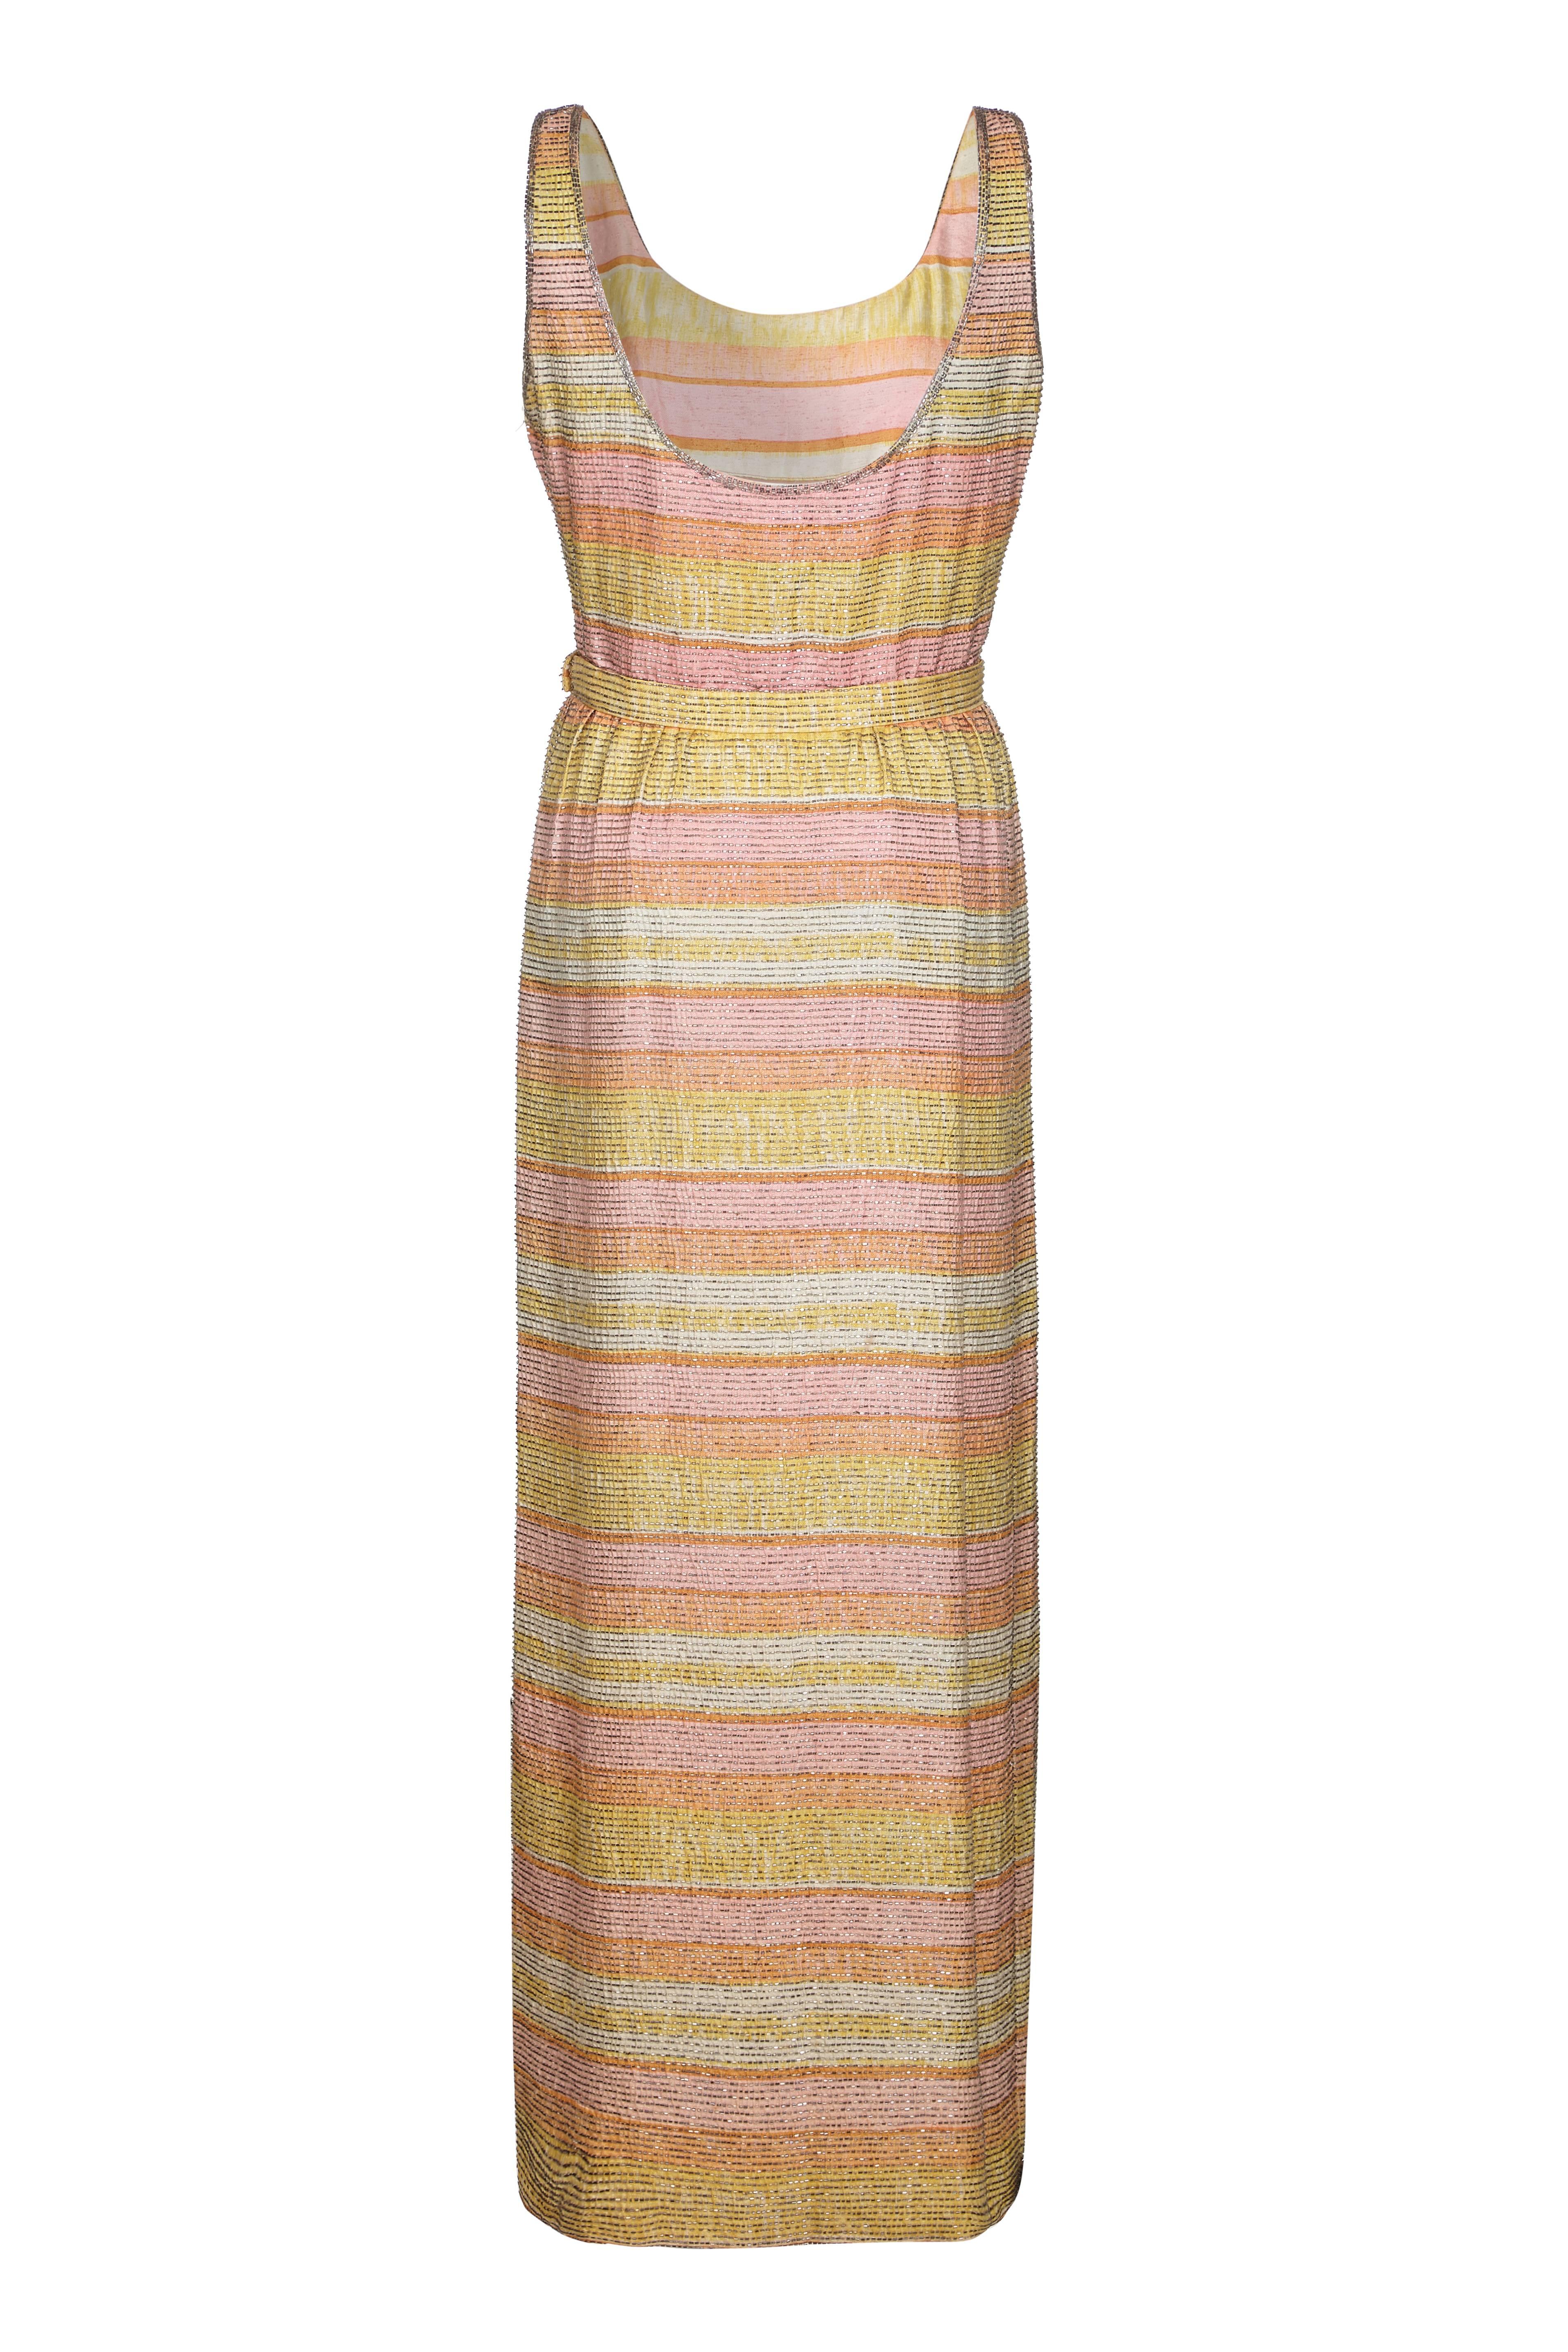 Incroyable robe en soie vintage des années 1960 de Mollie Parnis, avec de jolies rayures pastel et des perles sur tout le pourtour.  Elle est pleine longueur avec une fente sur un côté de la jupe, une ceinture à la taille et une fermeture à